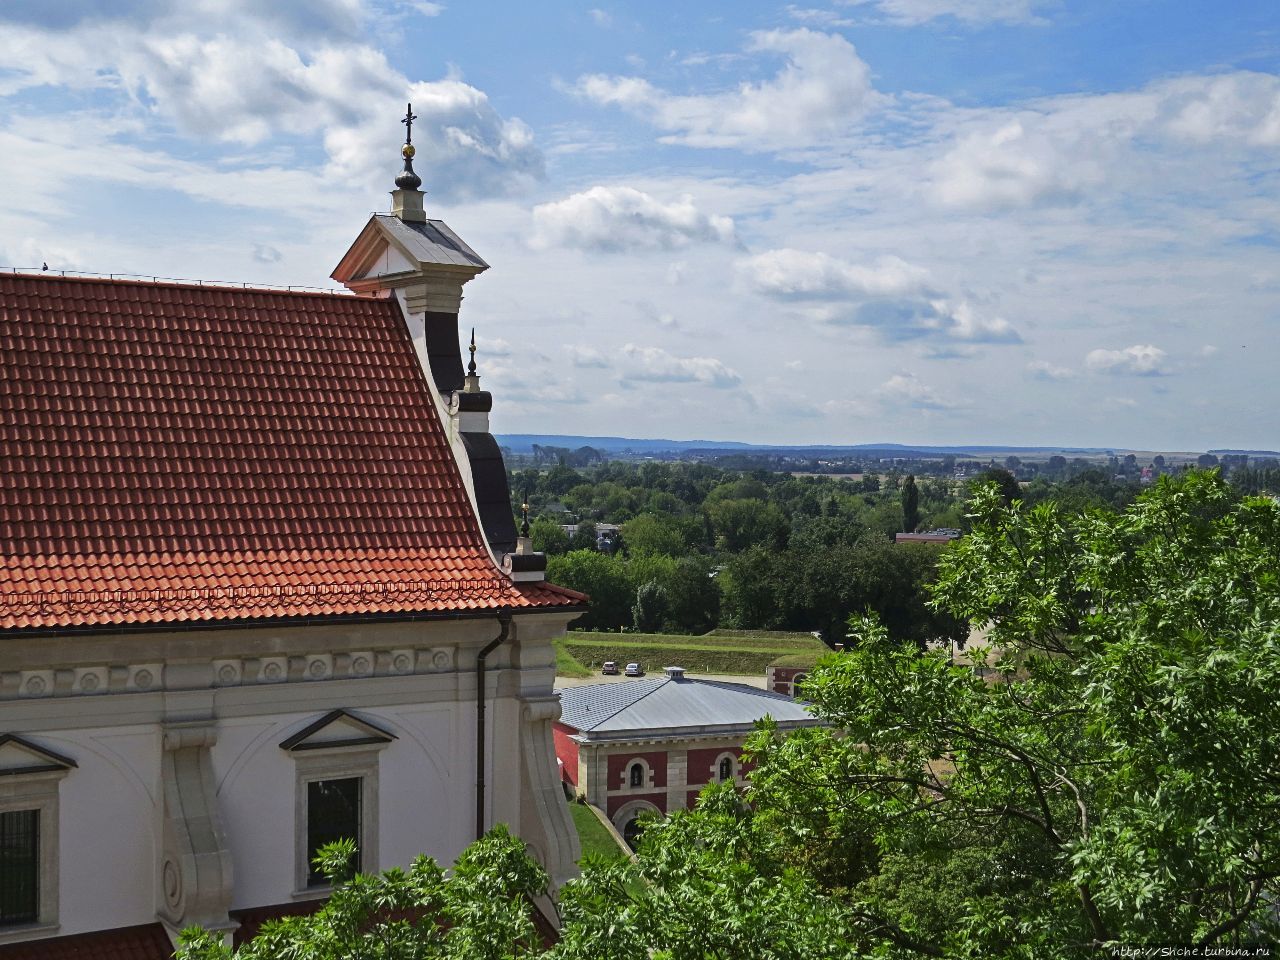 Колокольня Кафедрального собора Замосць, Польша